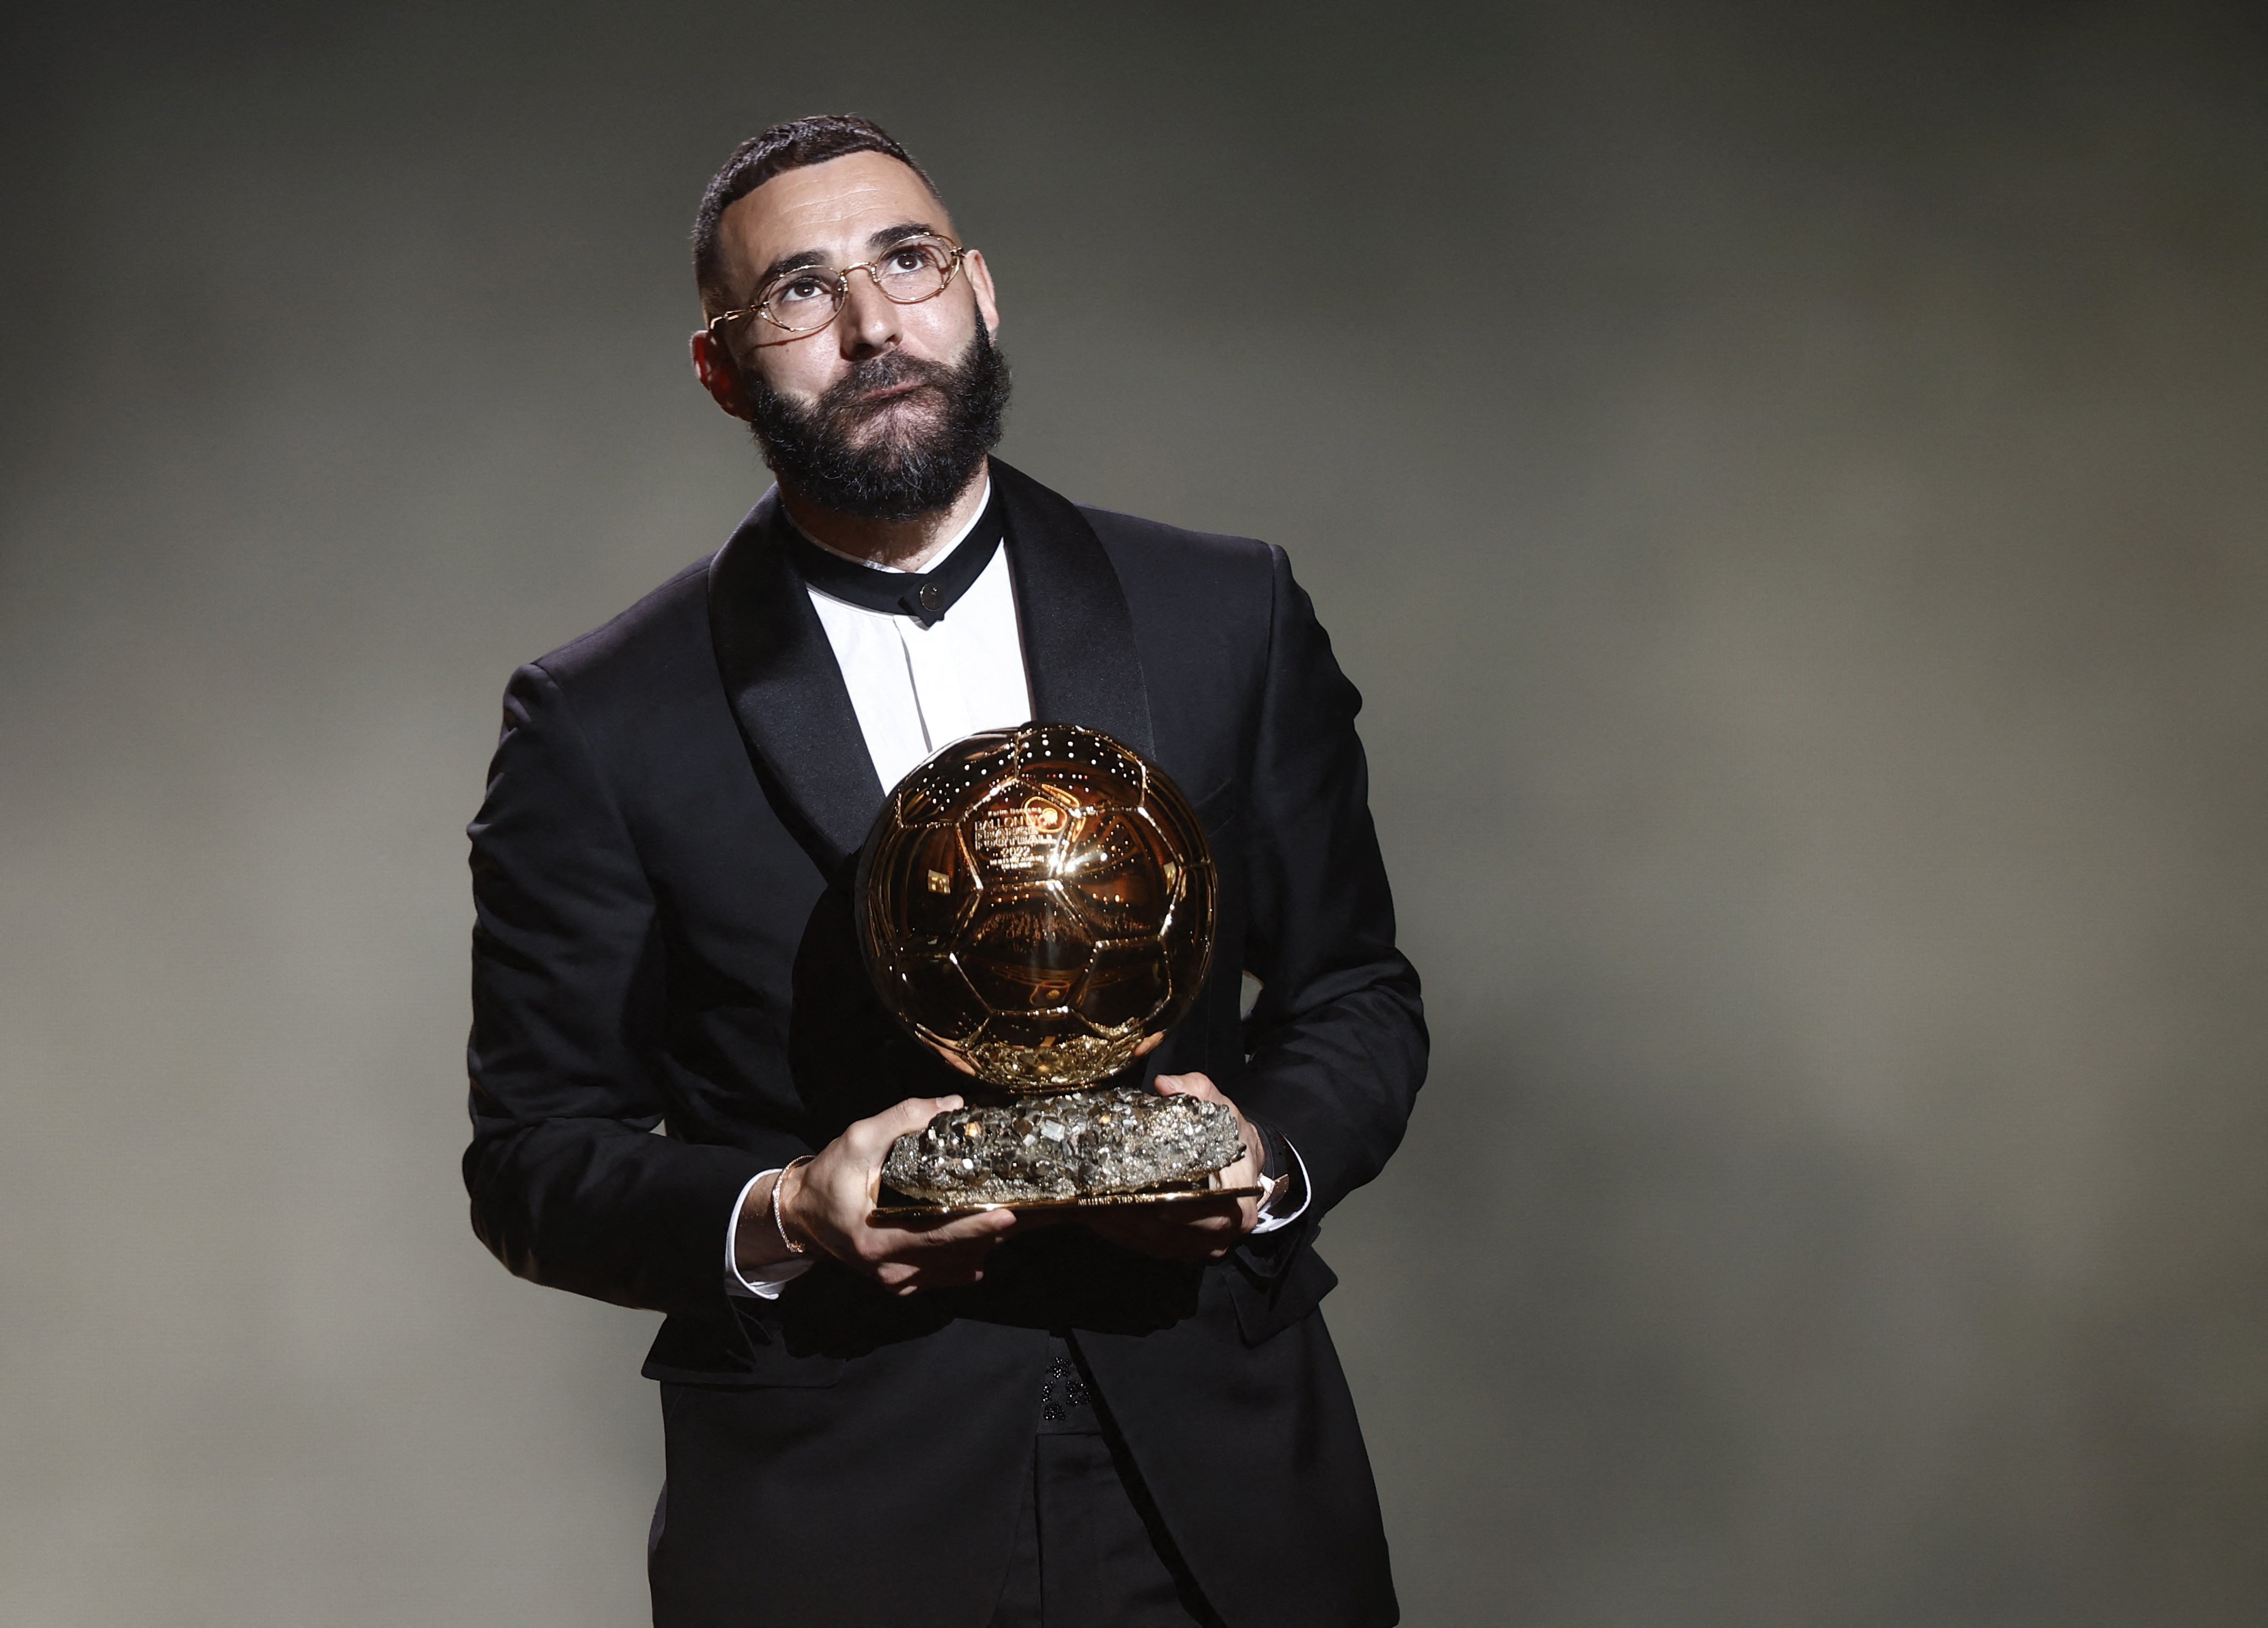 Veja fotos do prêmio de melhor jogador do mundo da Fifa - Gazeta